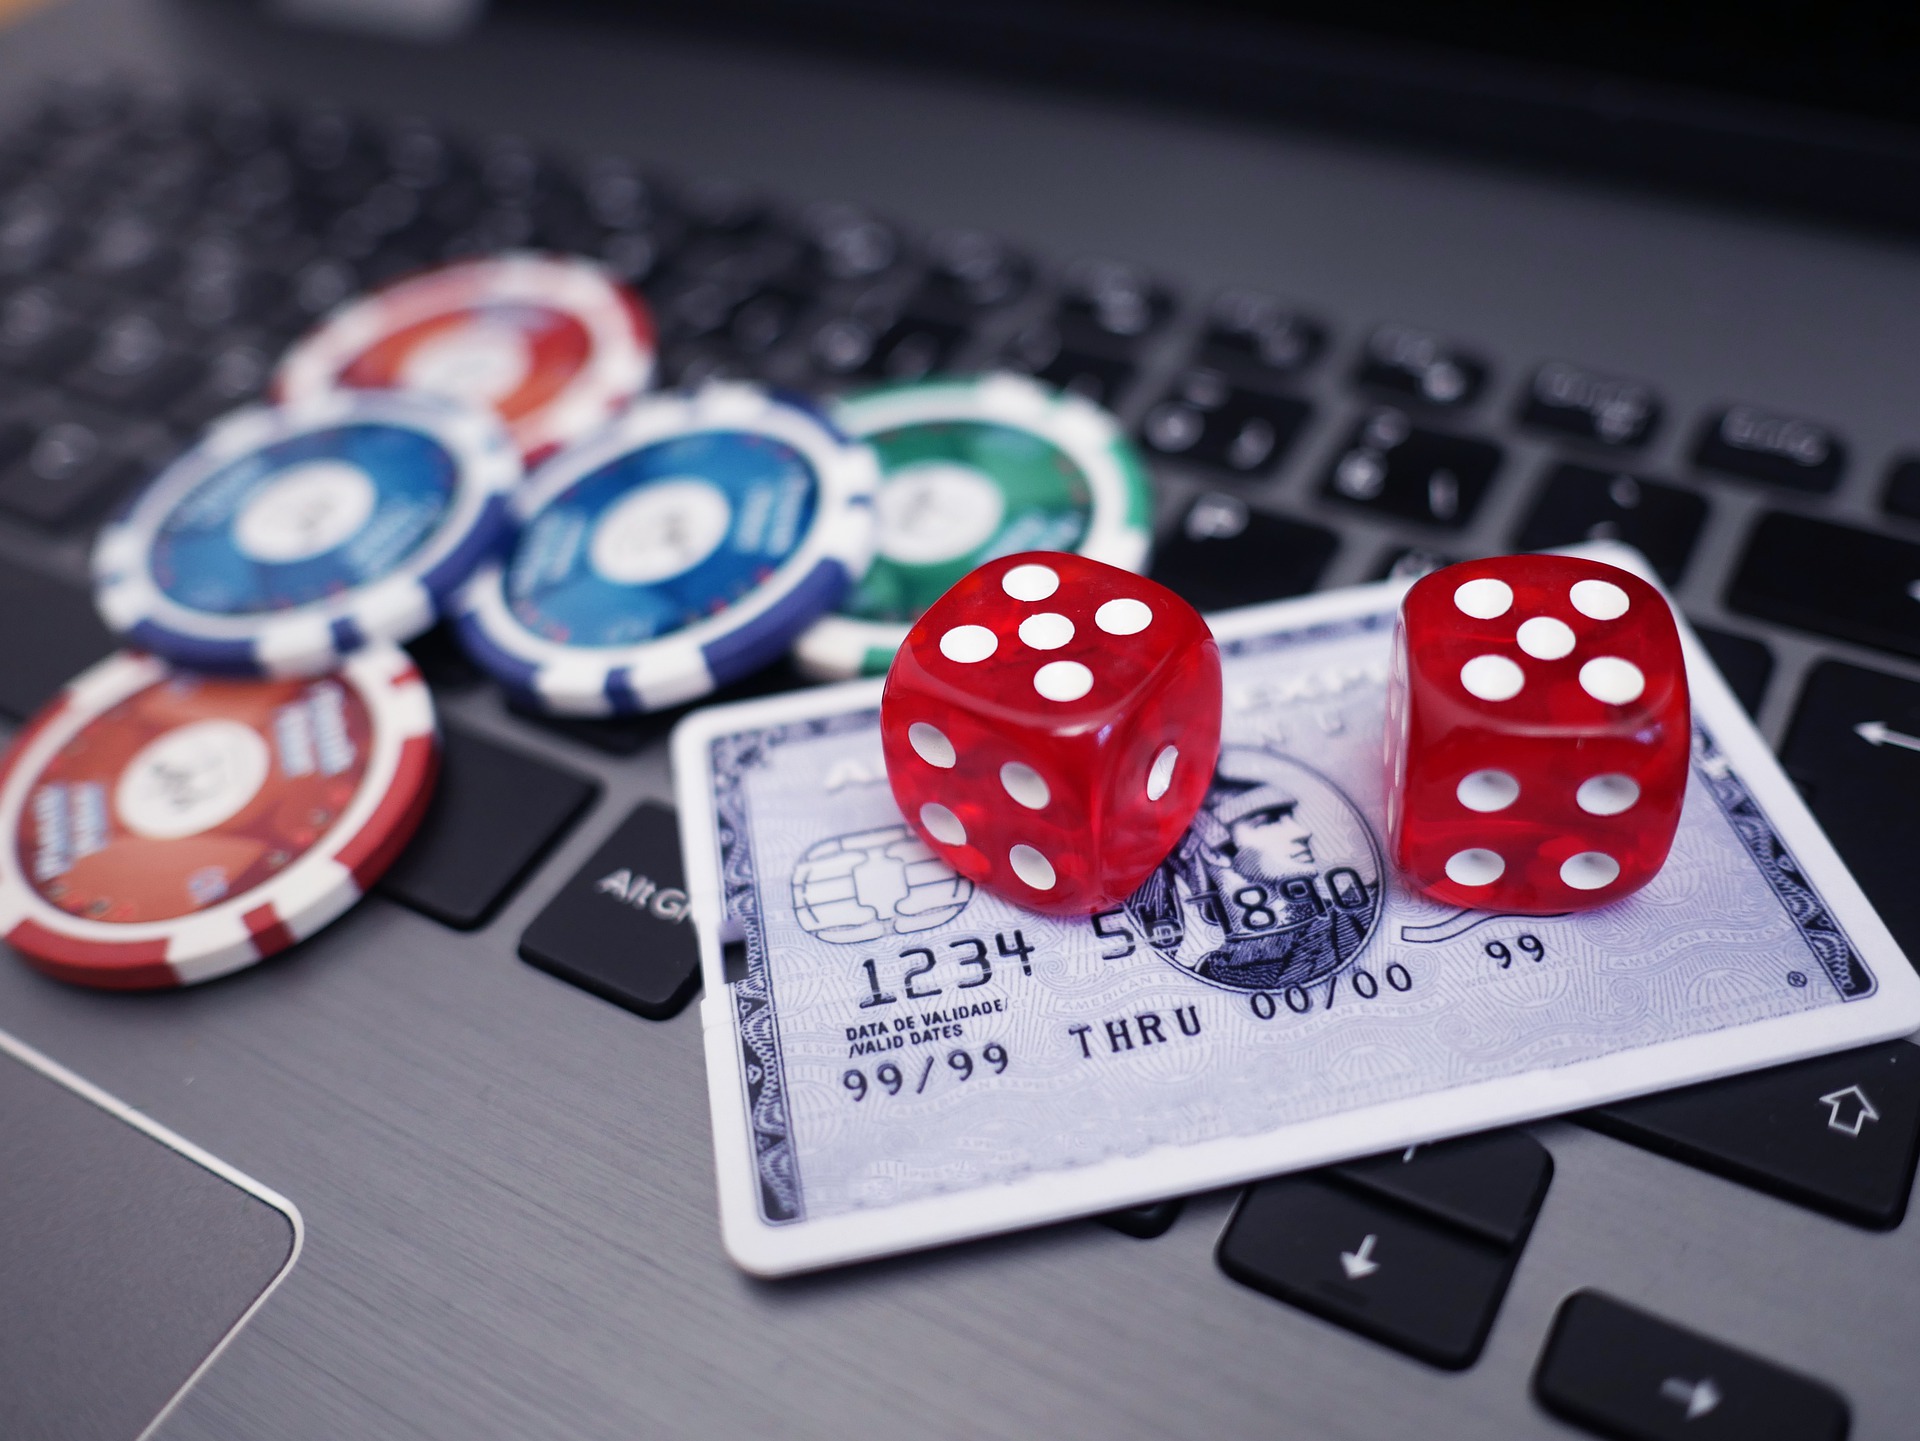 What Gambling Operators Have Affiliate Marketing Programs?